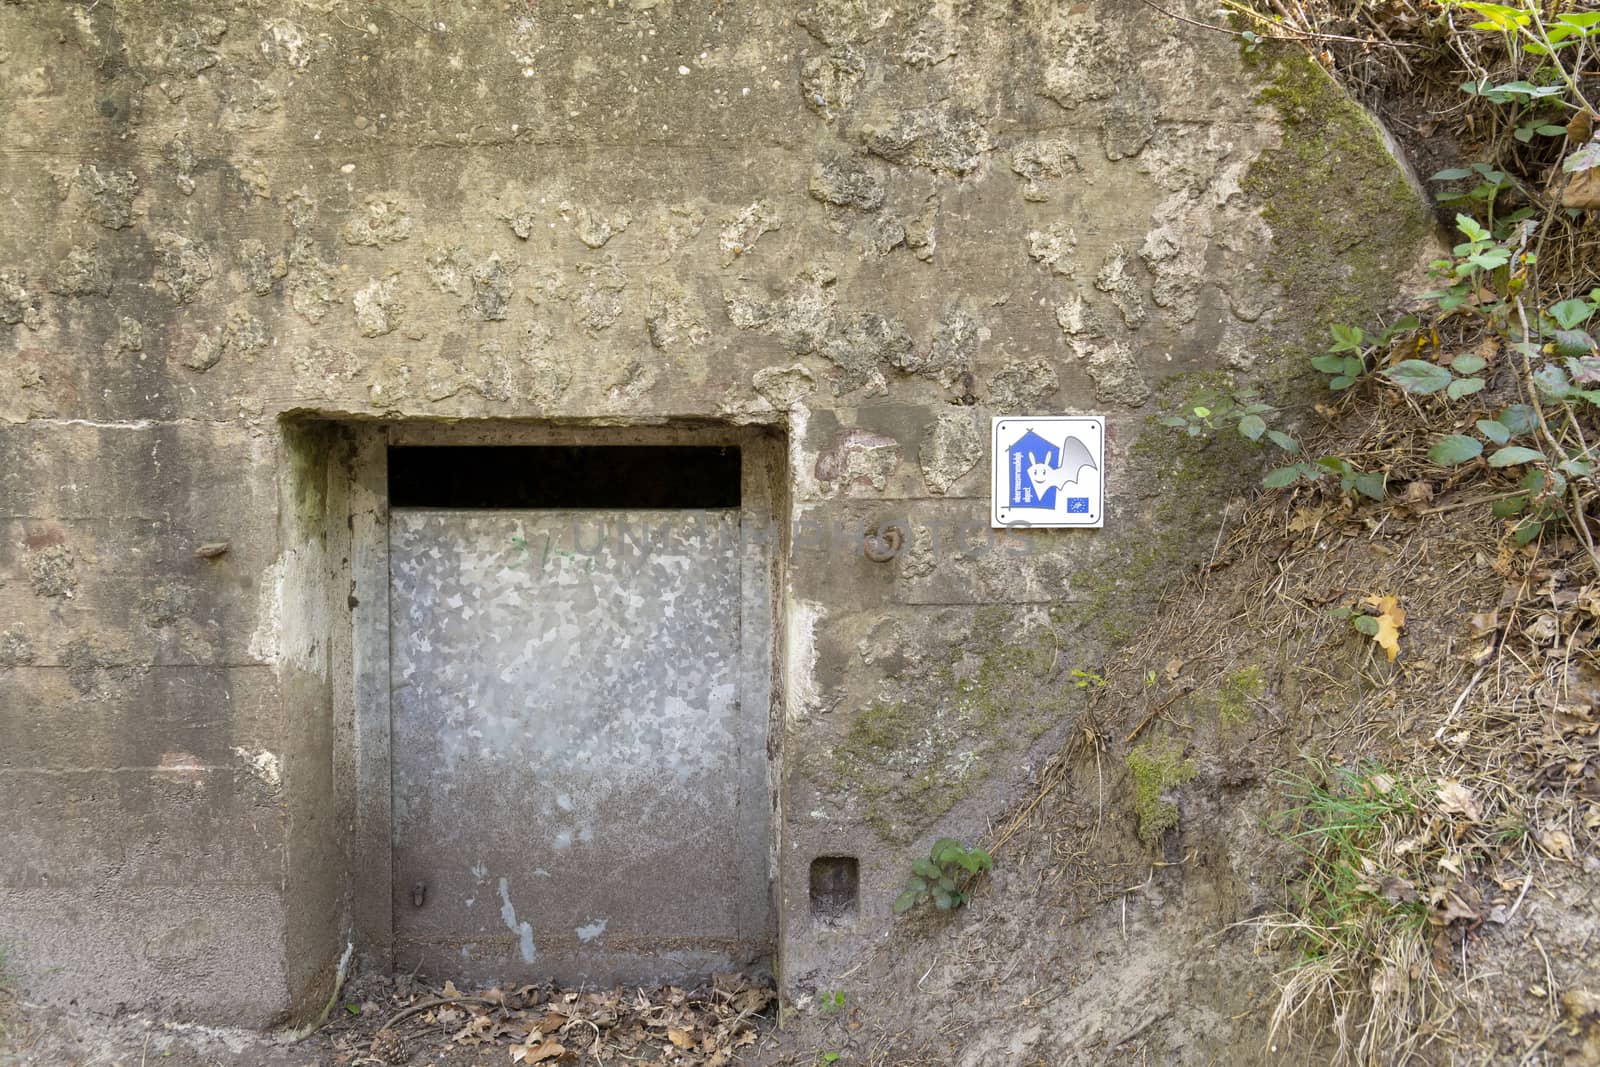 Kapellen, Belgium, April 2020: shelter for bats in old WW1 bunker.